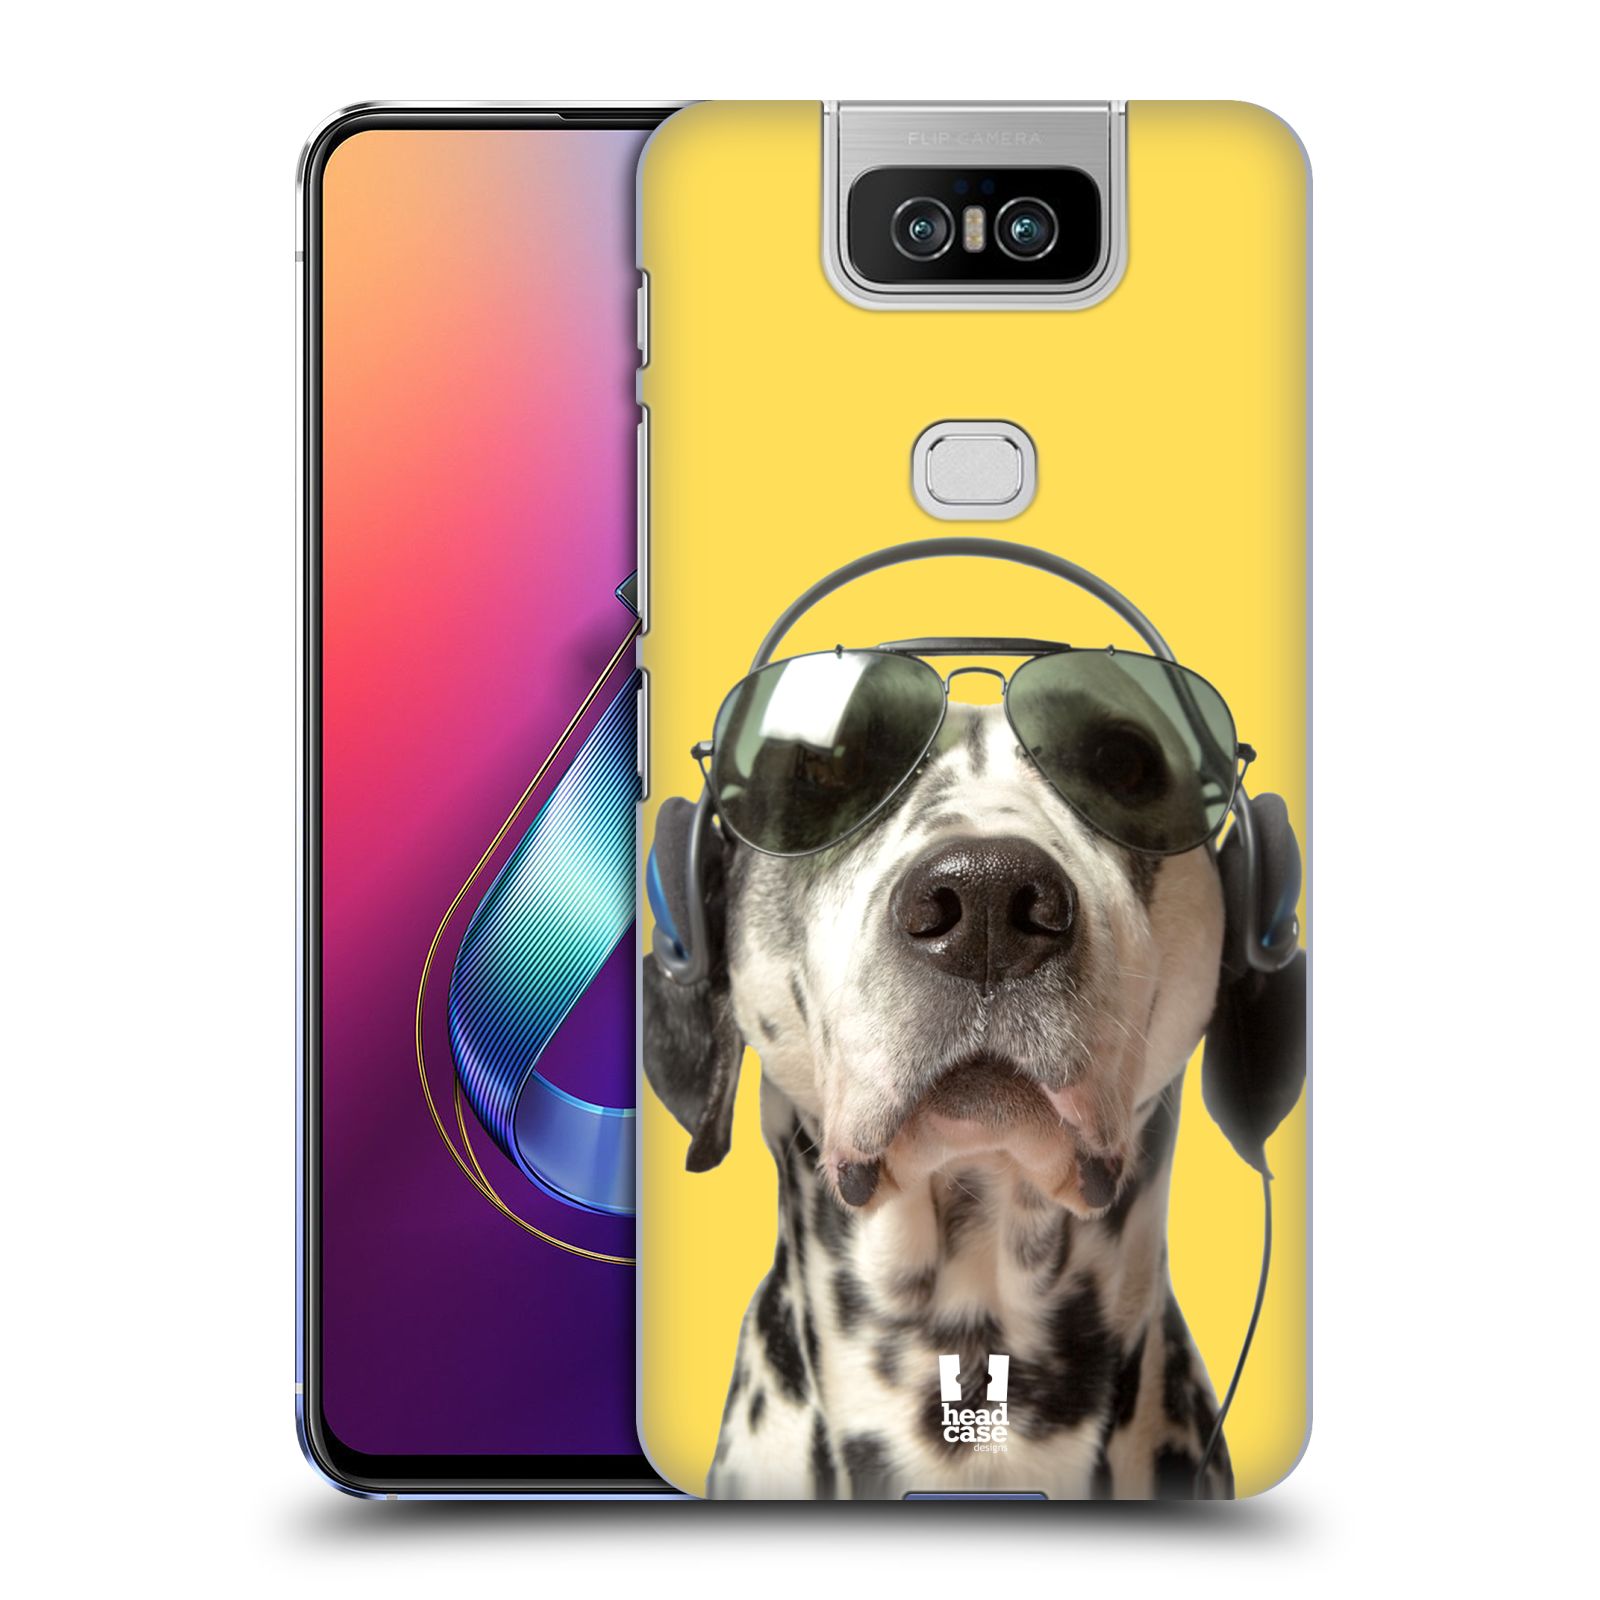 Pouzdro na mobil Asus Zenfone 6 ZS630KL - HEAD CASE - vzor Legrační zvířátka dalmatin se sluchátky žlutá